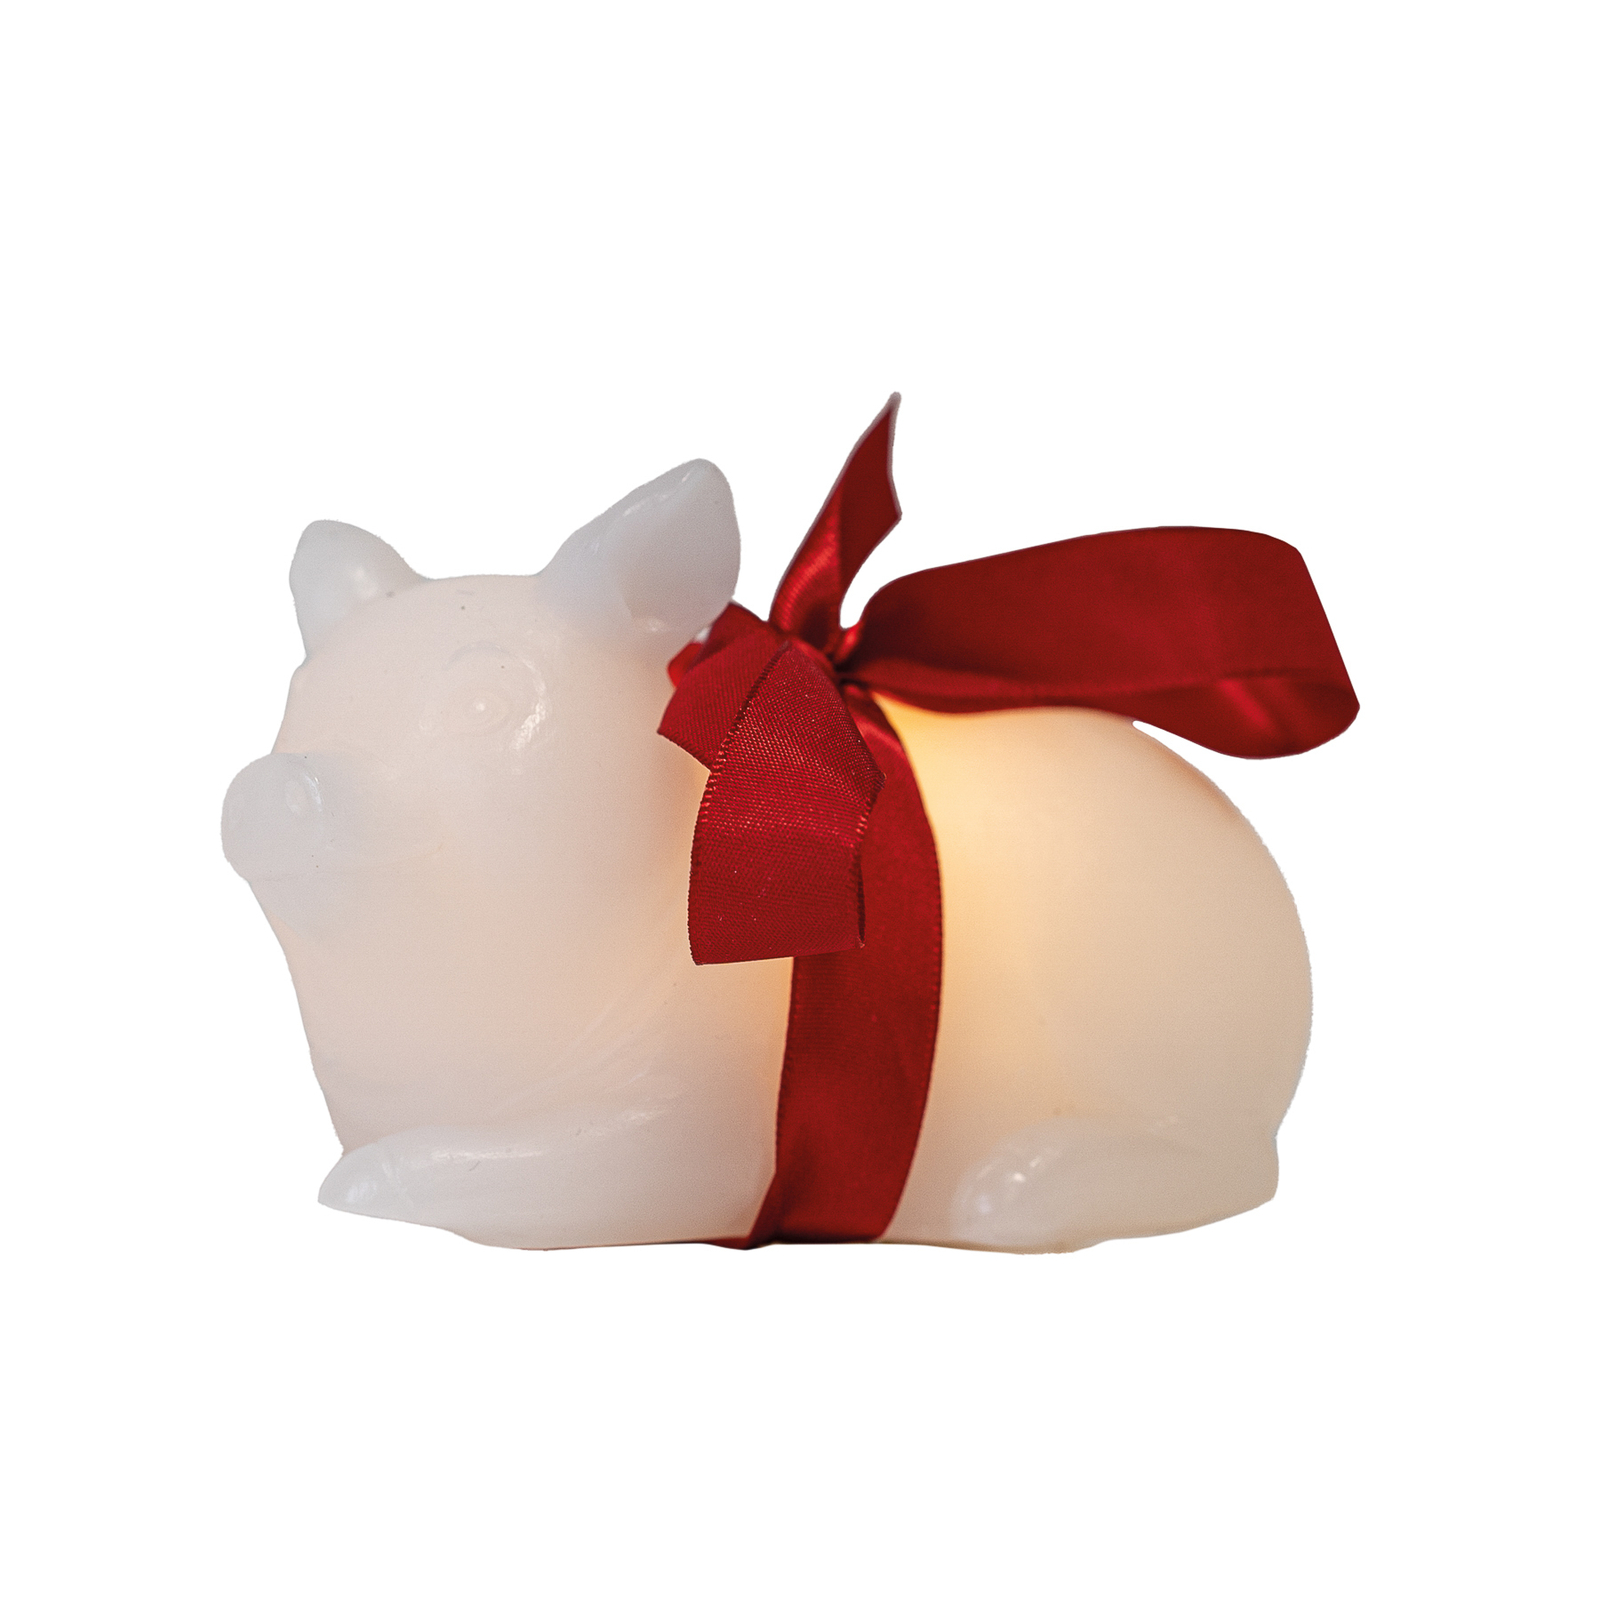 Emma Pig LED dekoratív lámpa viaszból készült